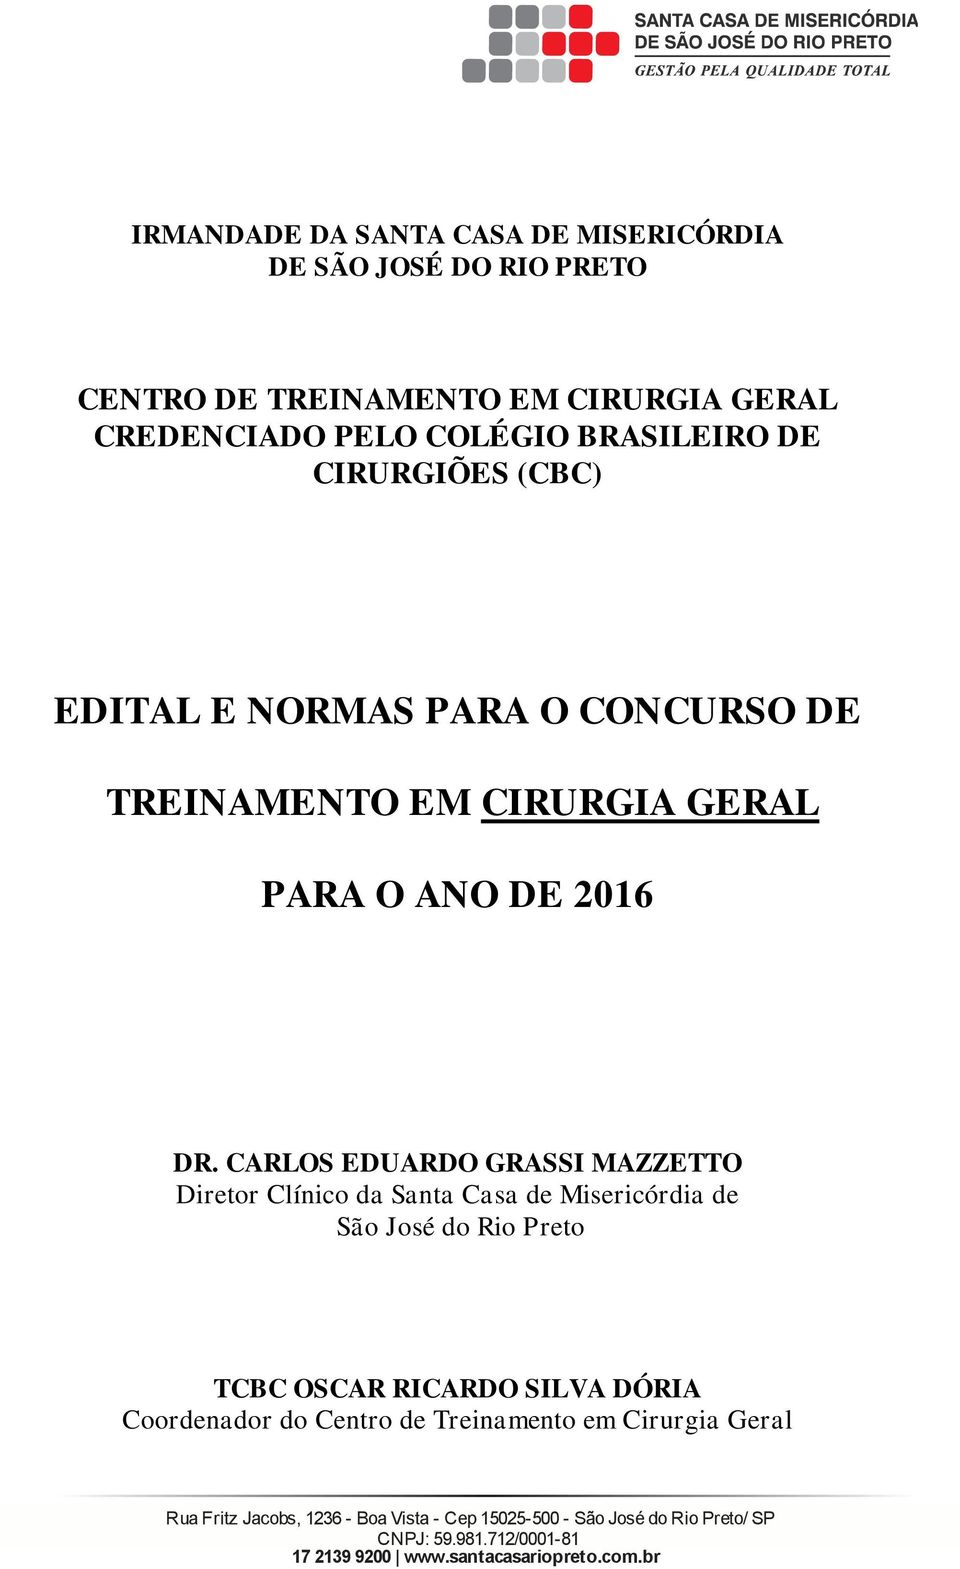 DR. CARLOS EDUARDO GRASSI MAZZETTO Dieto Clínico da Santa Casa de Miseicódia de São José do Rio Peto TCBC OSCAR RICARDO